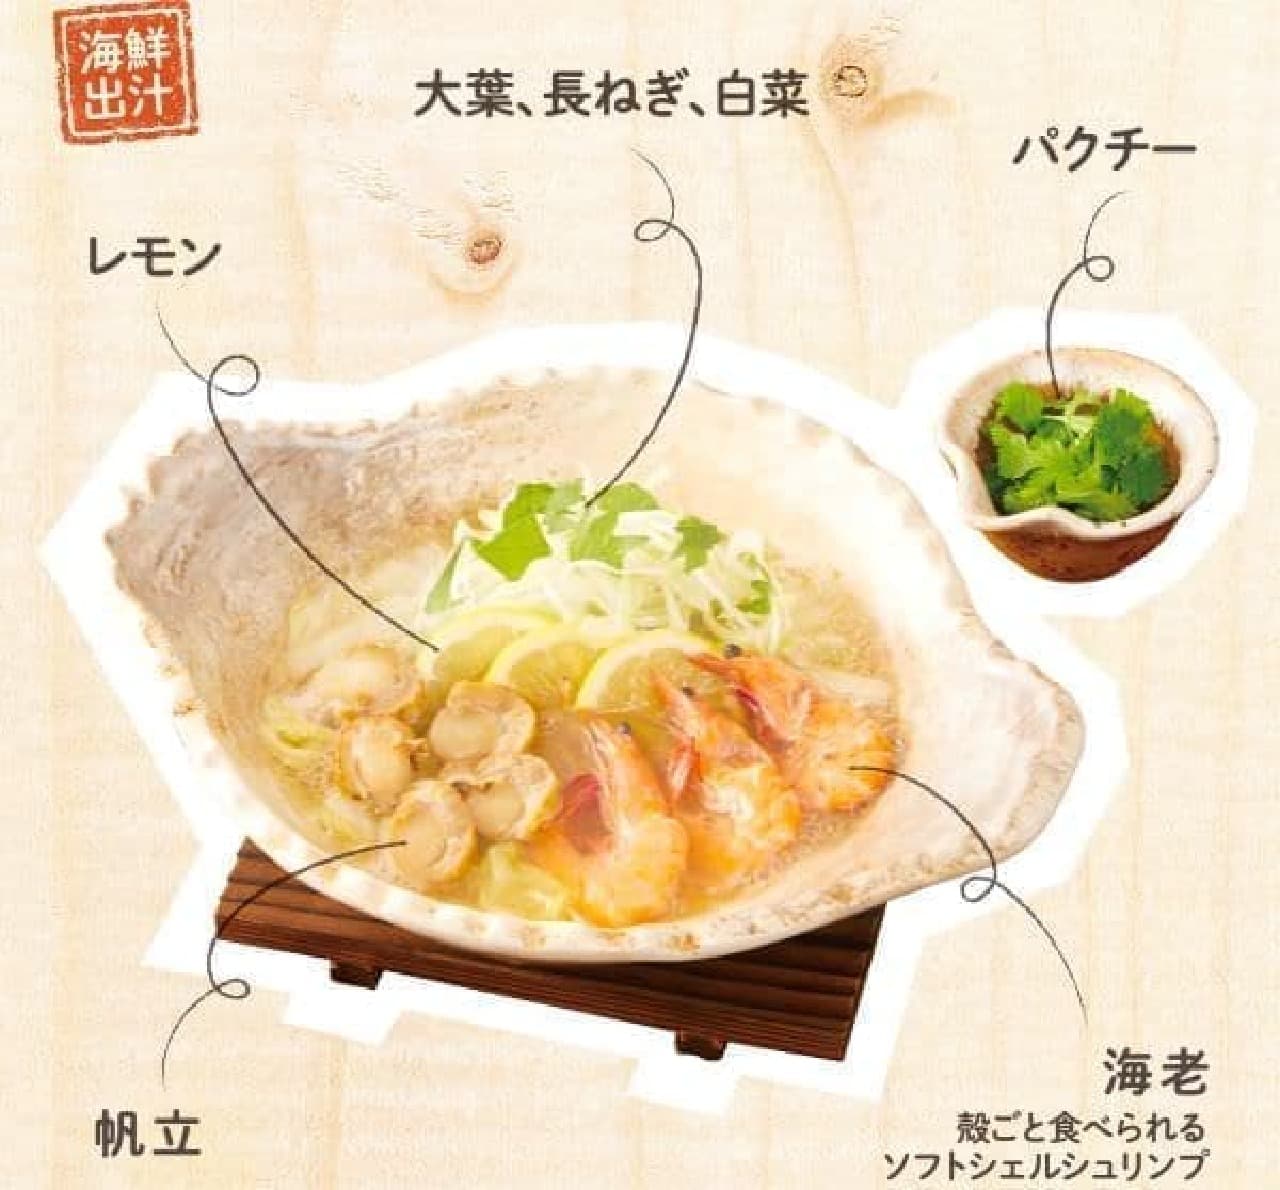 大戸屋「海老と帆立の香草レモン鍋定食」